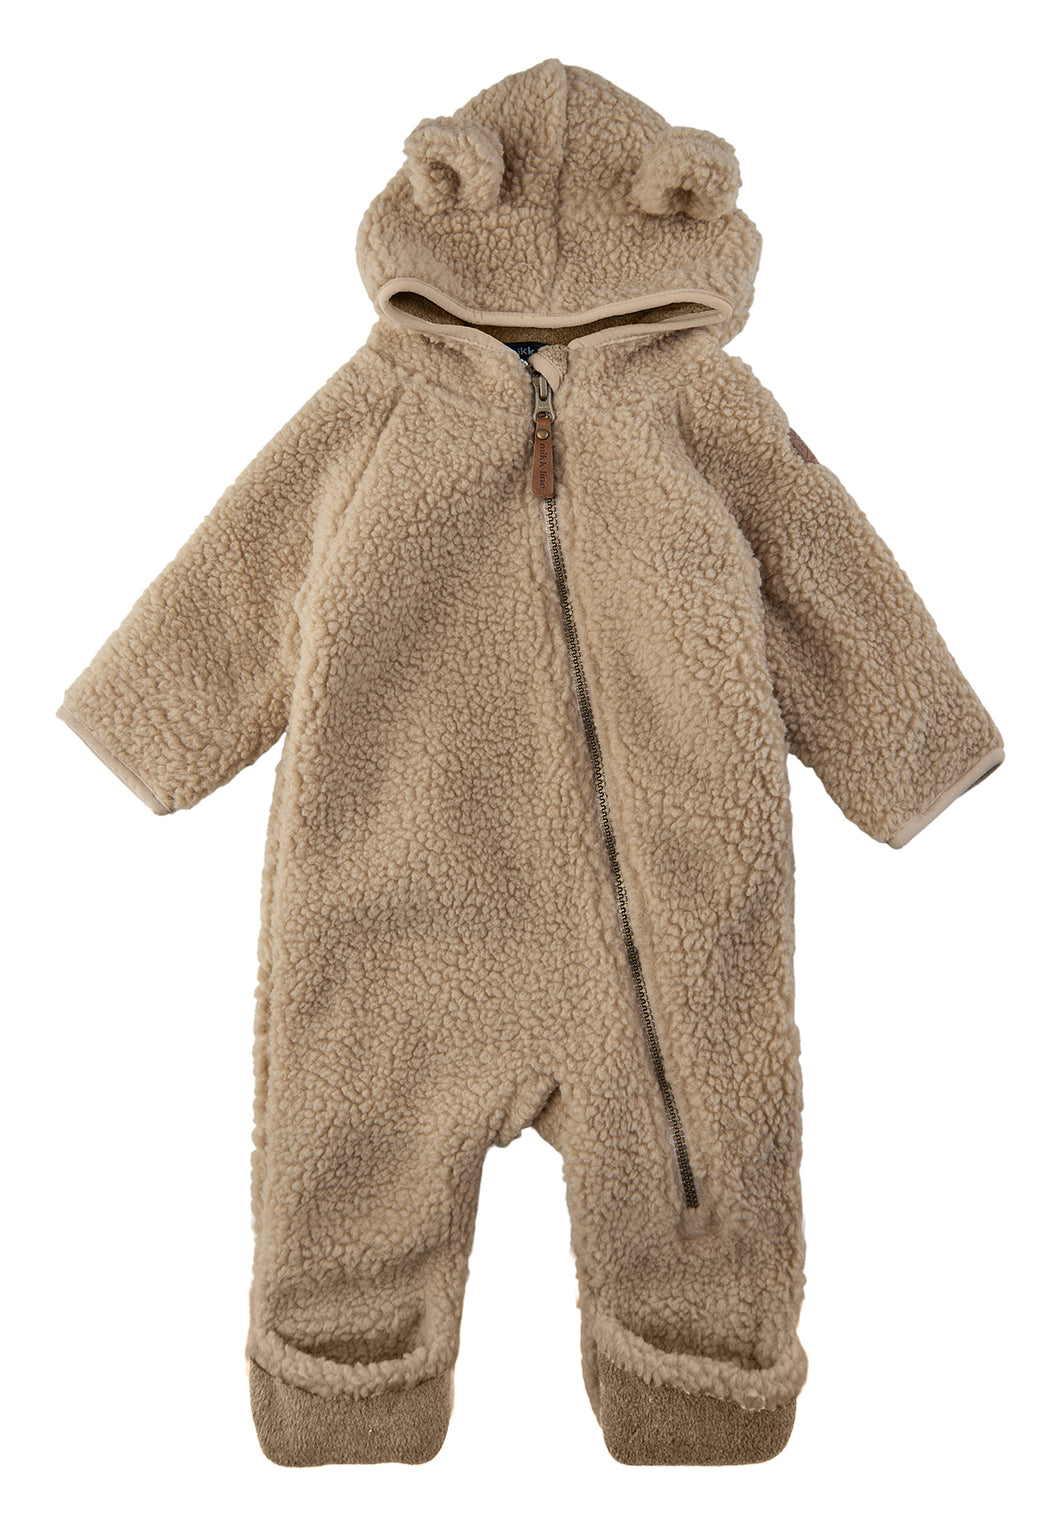 All- in-one baby fleece suit